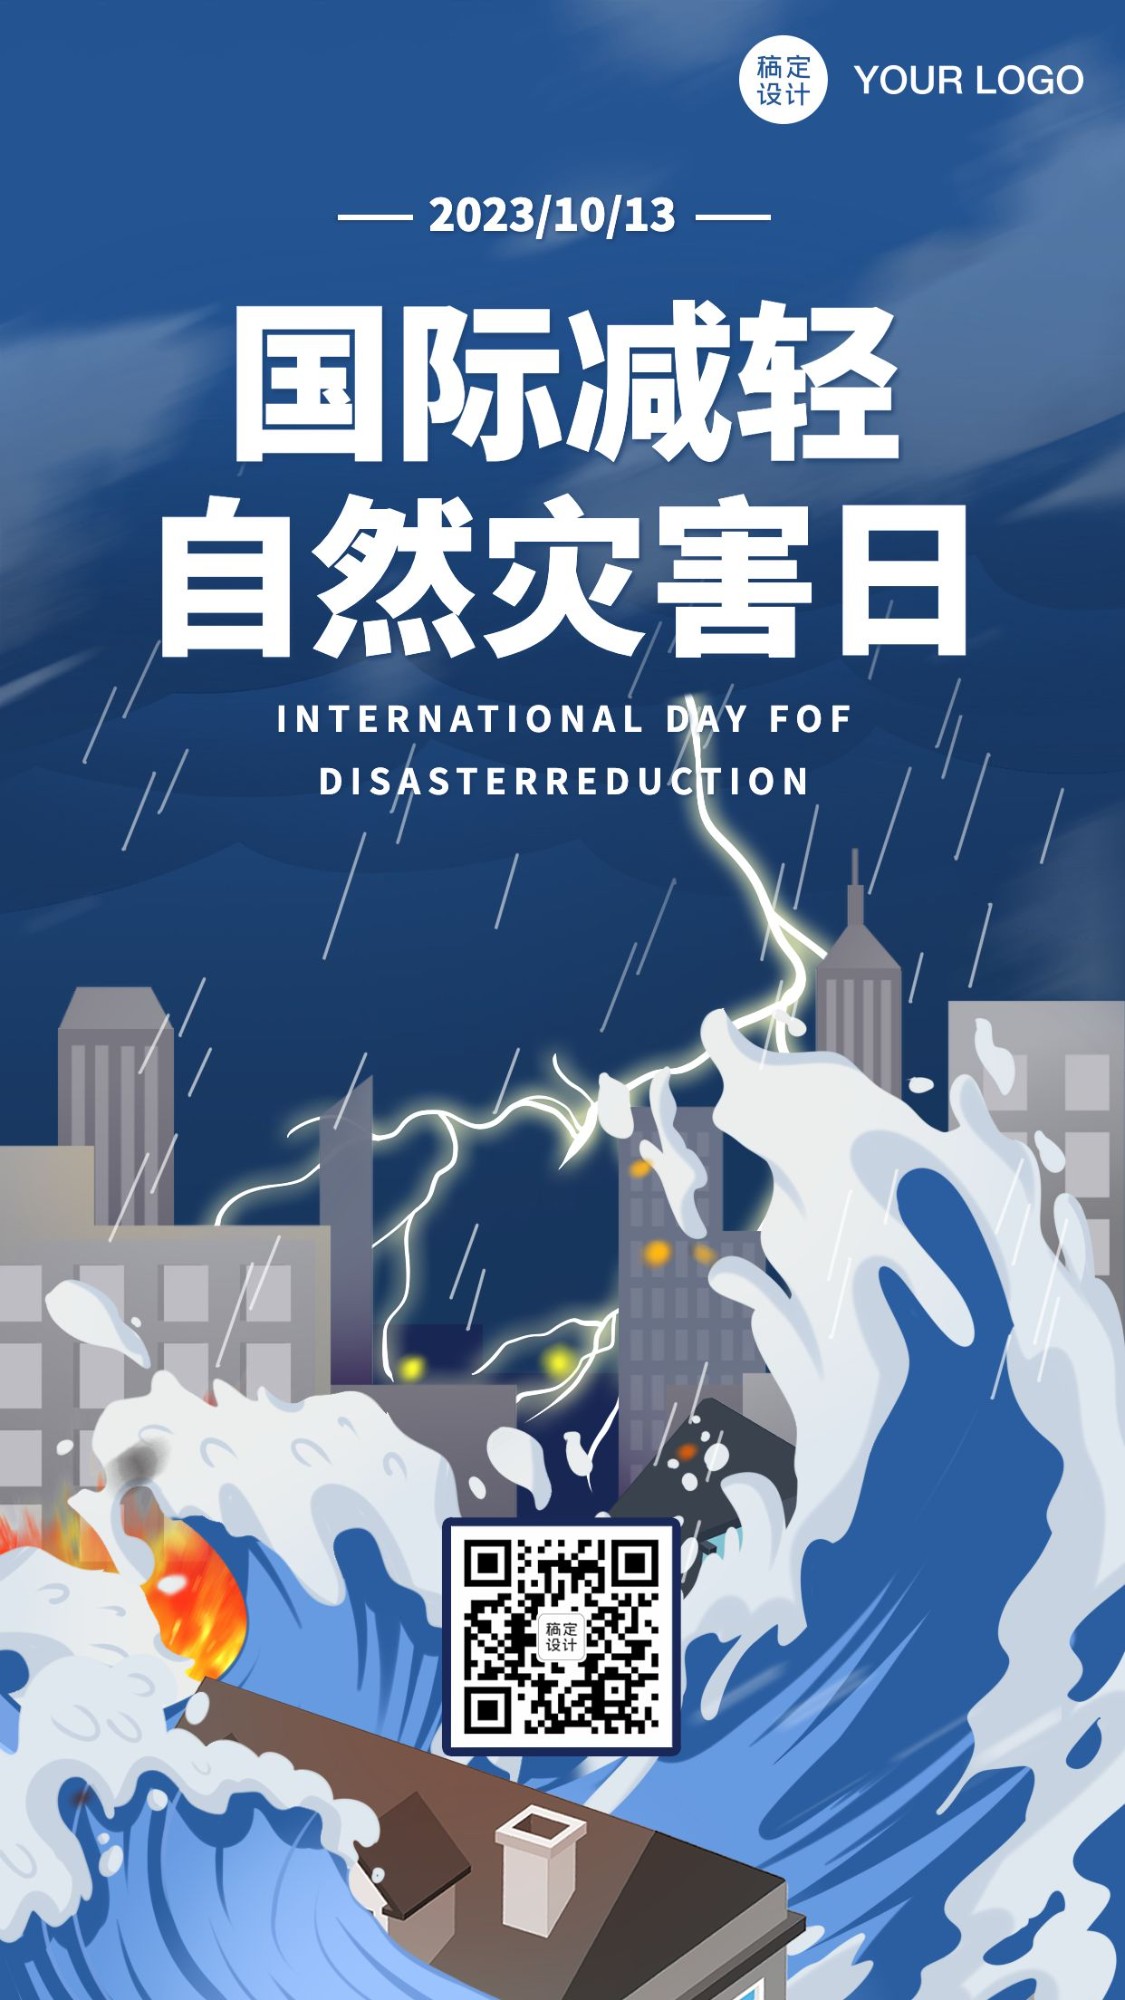 国际减轻自然灾害日插画手机海报